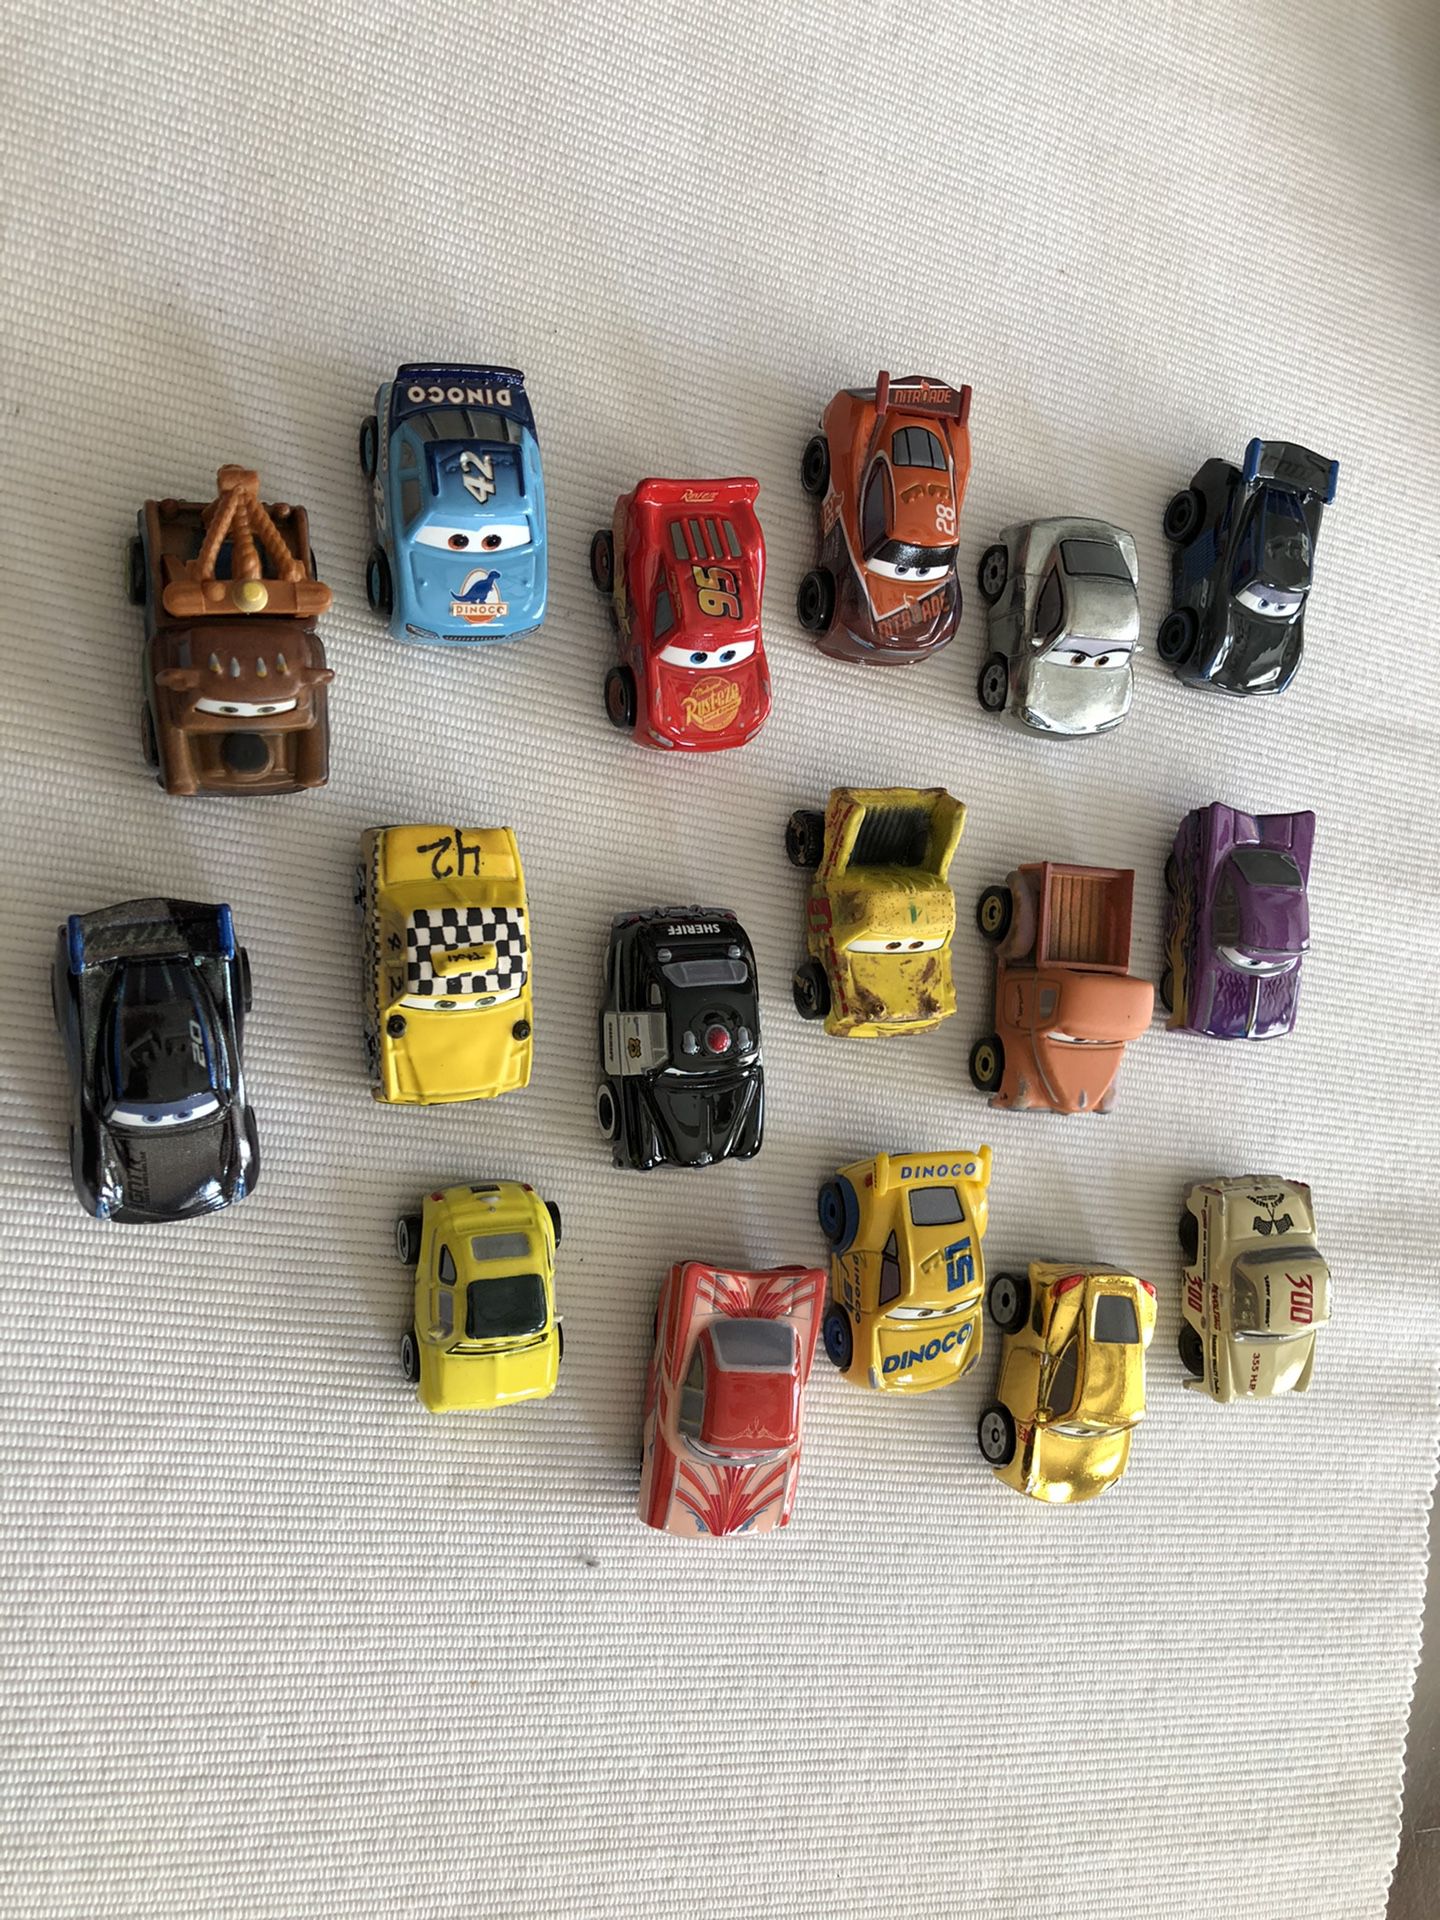 Disney Pixar mini metal cars.